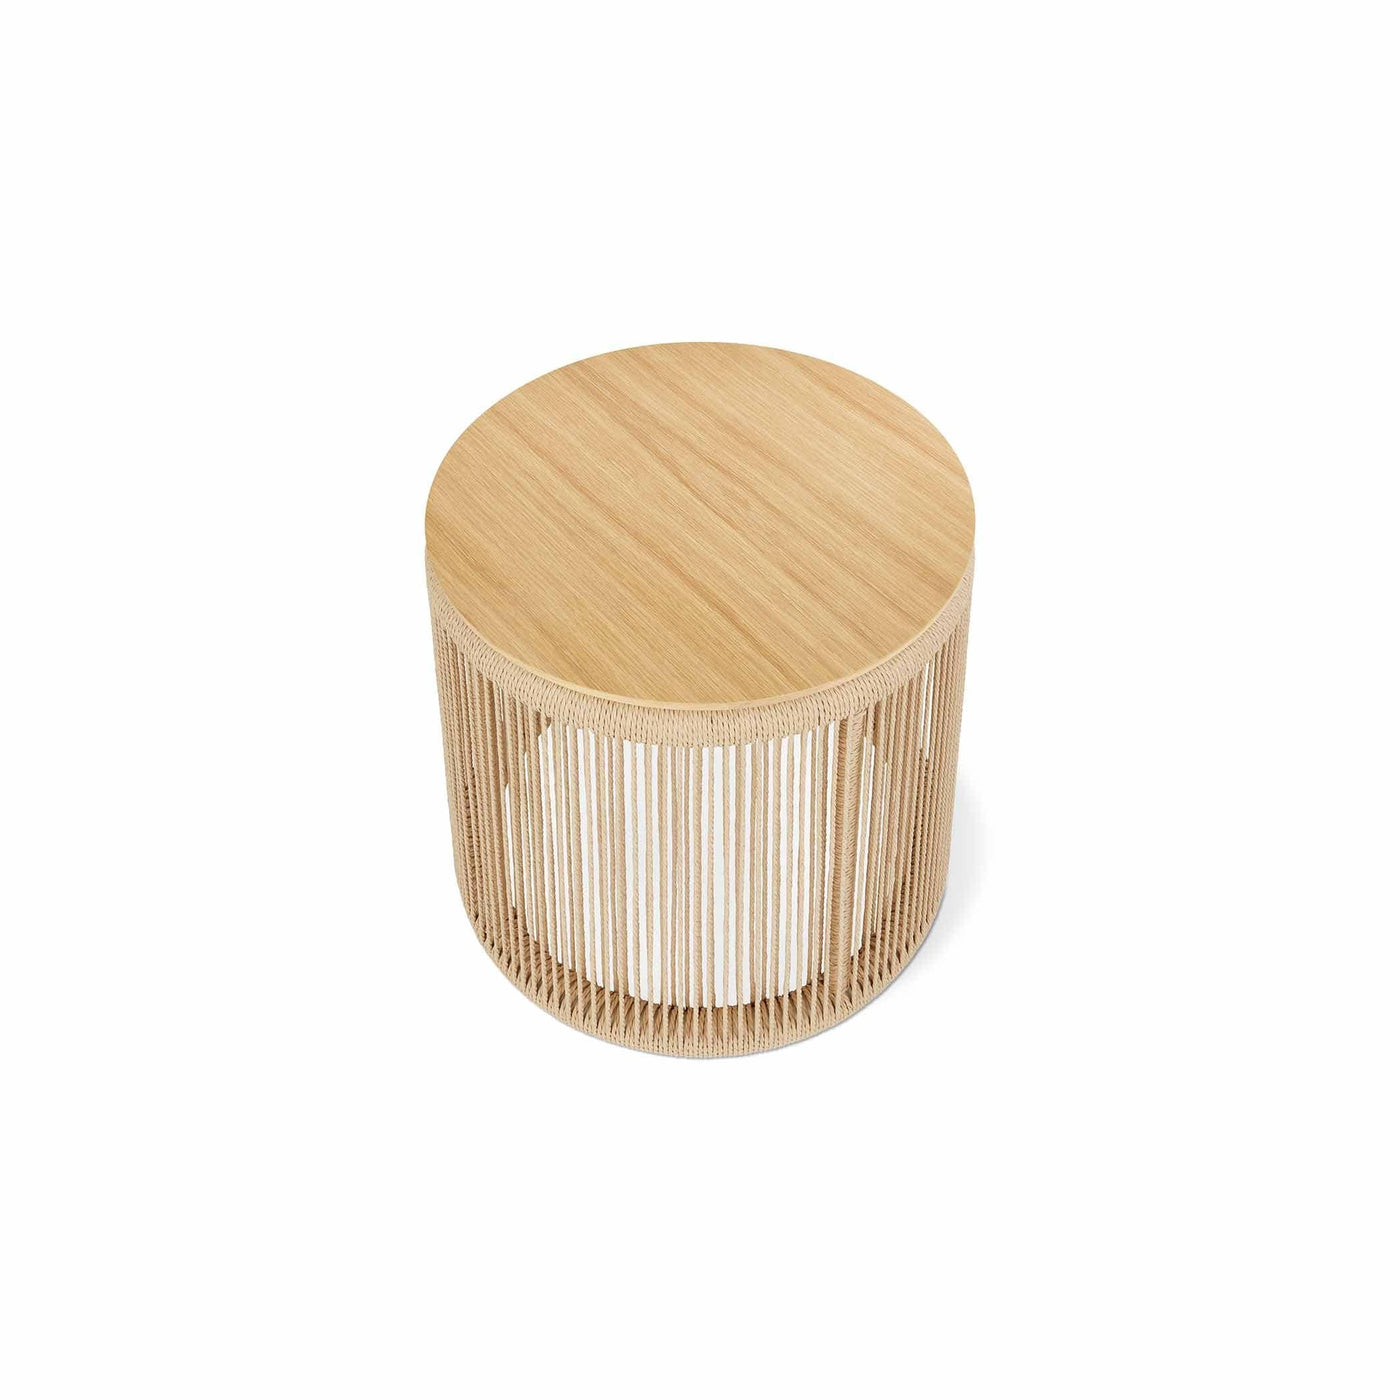 Plongez dans l'artisanat traditionnel avec la table Palma de Gus* Modern : corde danoise et bois massif se rencontrent dans un design épuré.